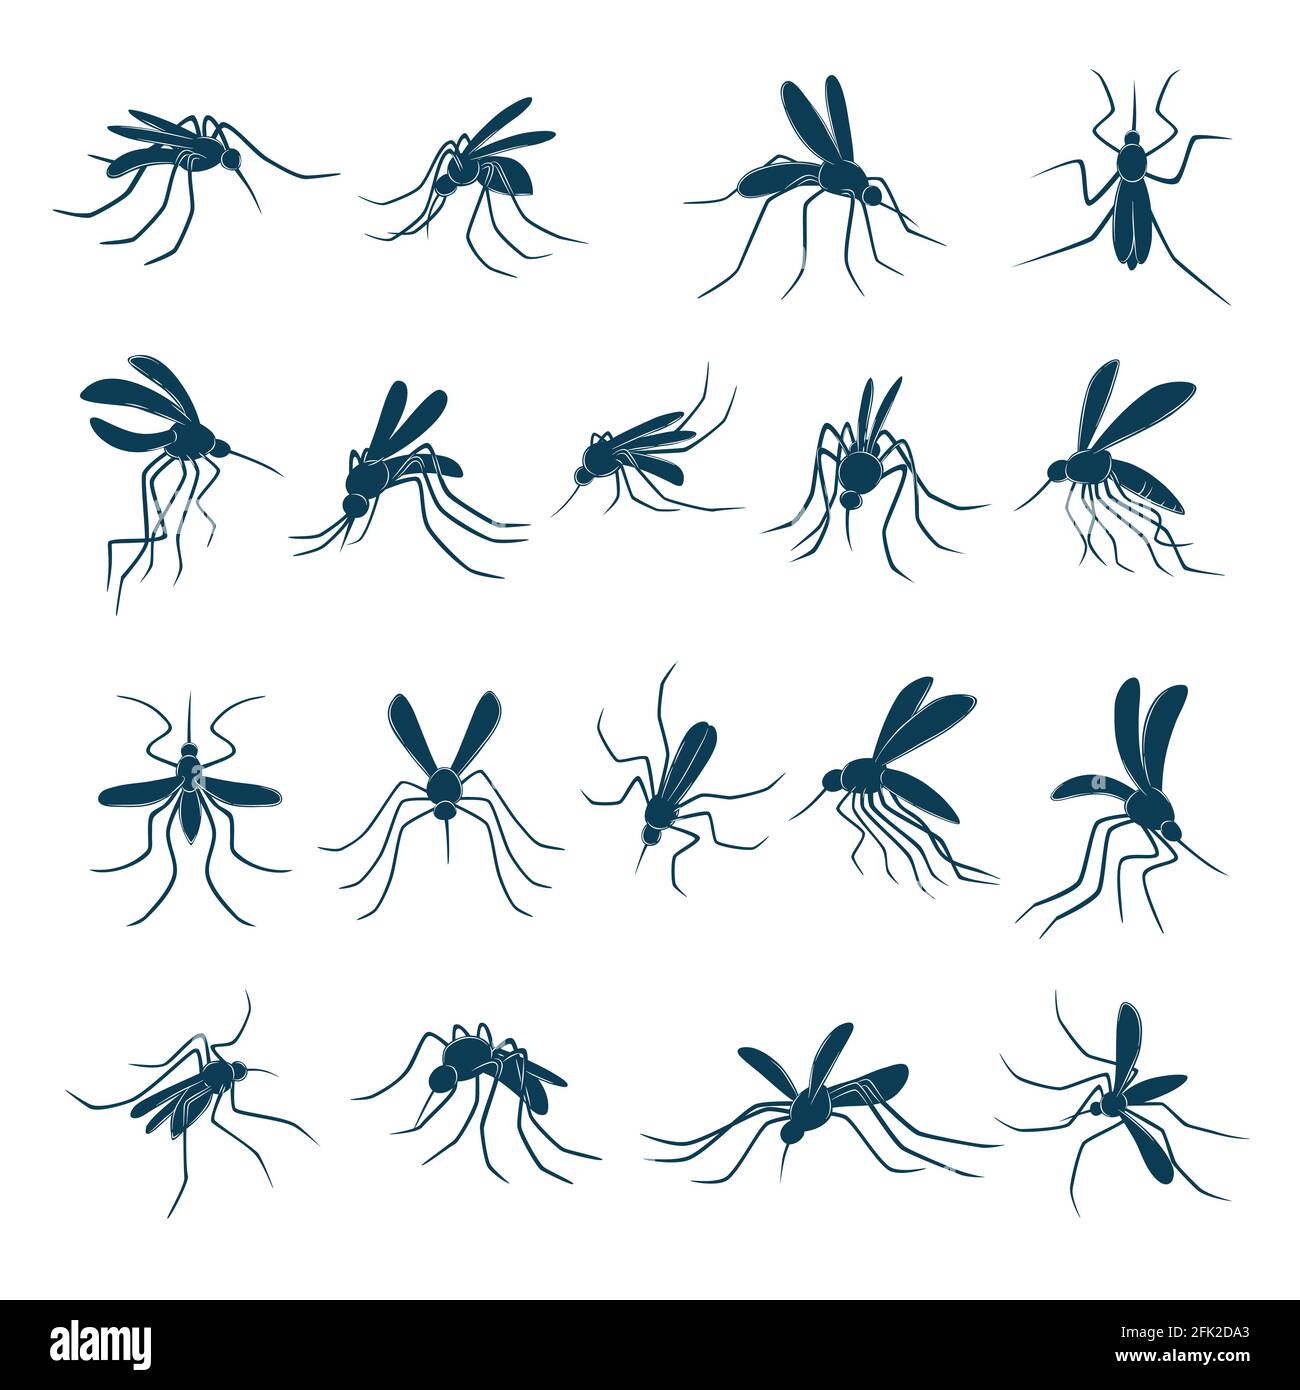 Fliegende Mücke. Kleine Blutsauger Insekten Träger von Viren Silhouetten Vektor gezeichnet gesetzt Stock Vektor